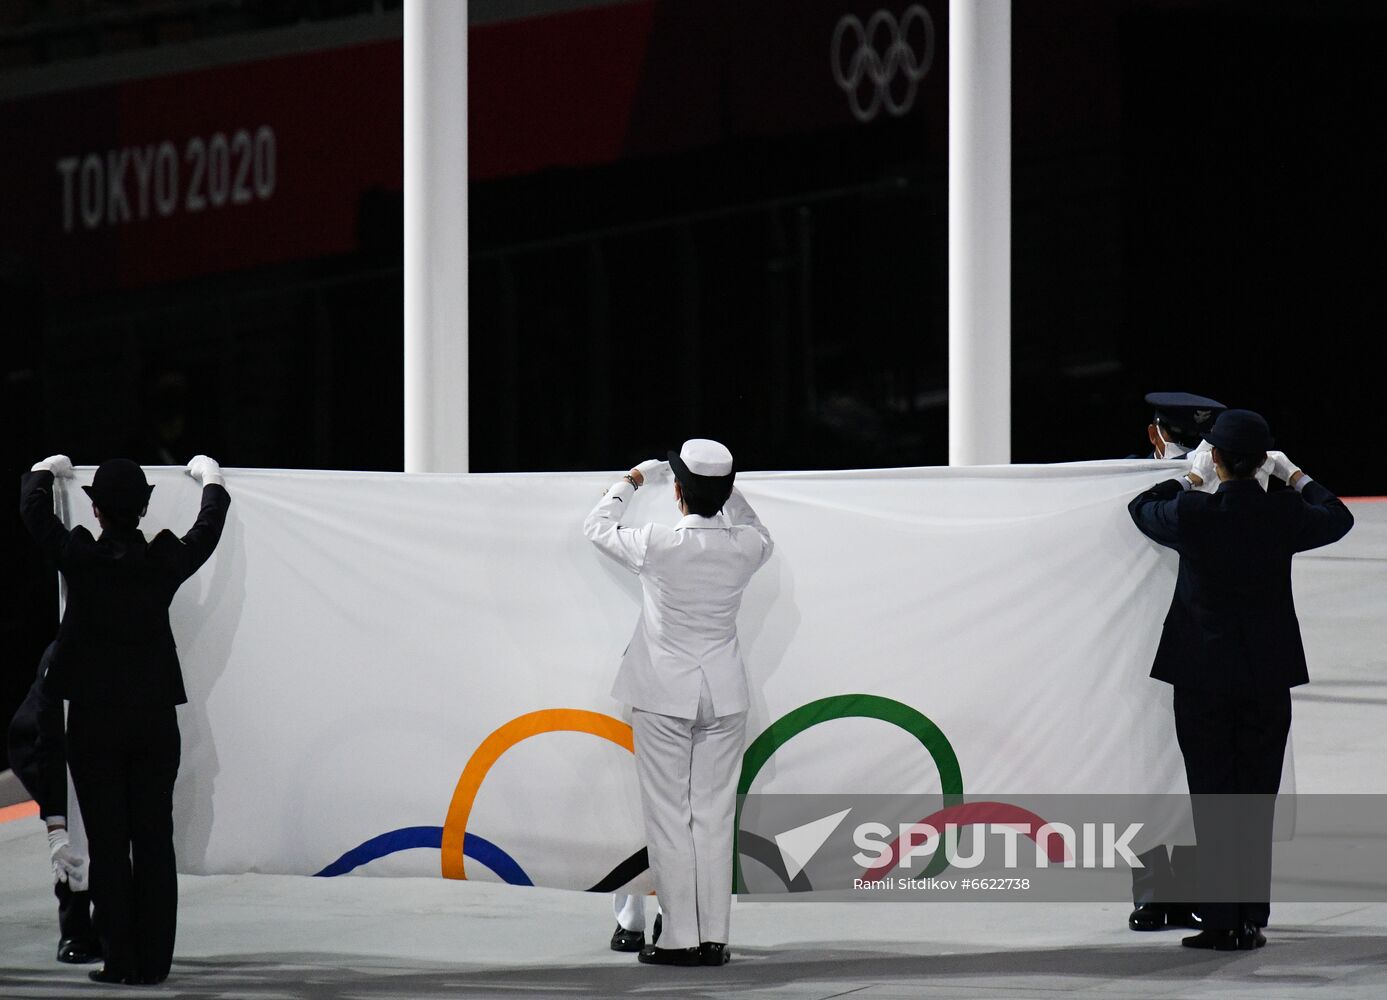 Japan Olympics 2020 Closing Ceremony